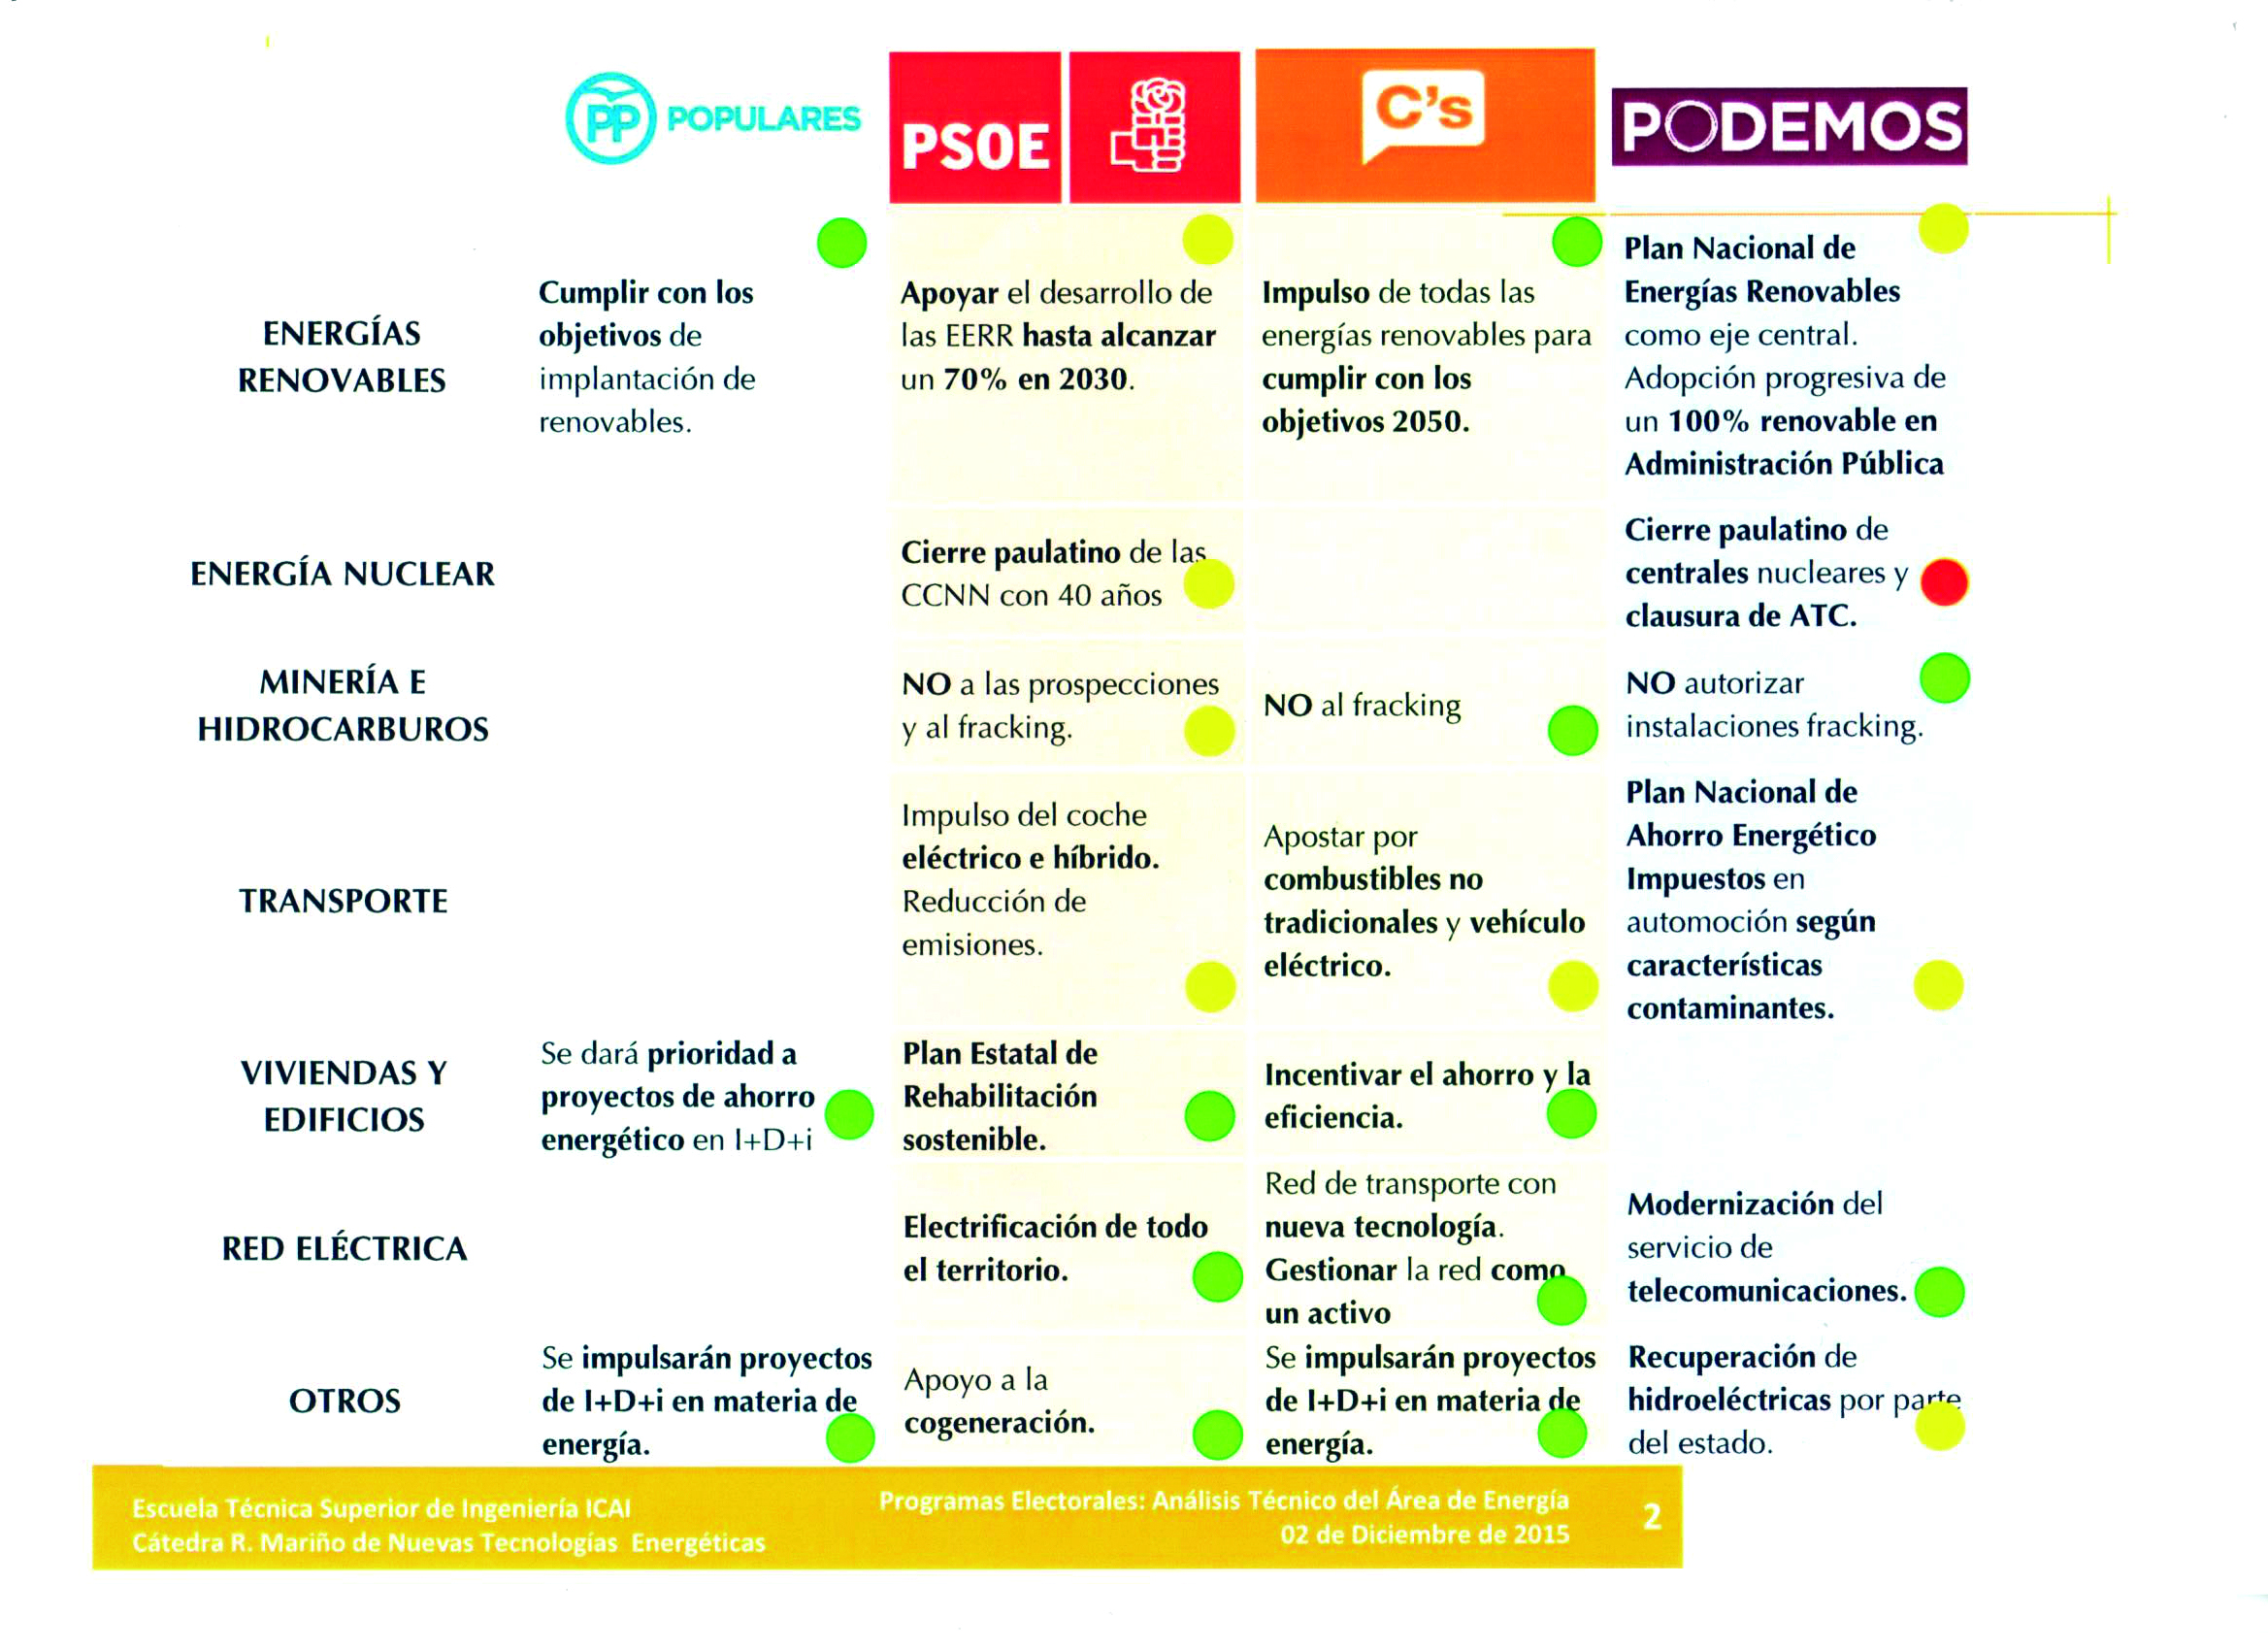 Gráfica del análisis de los programas electorales de los principales partidos políticos